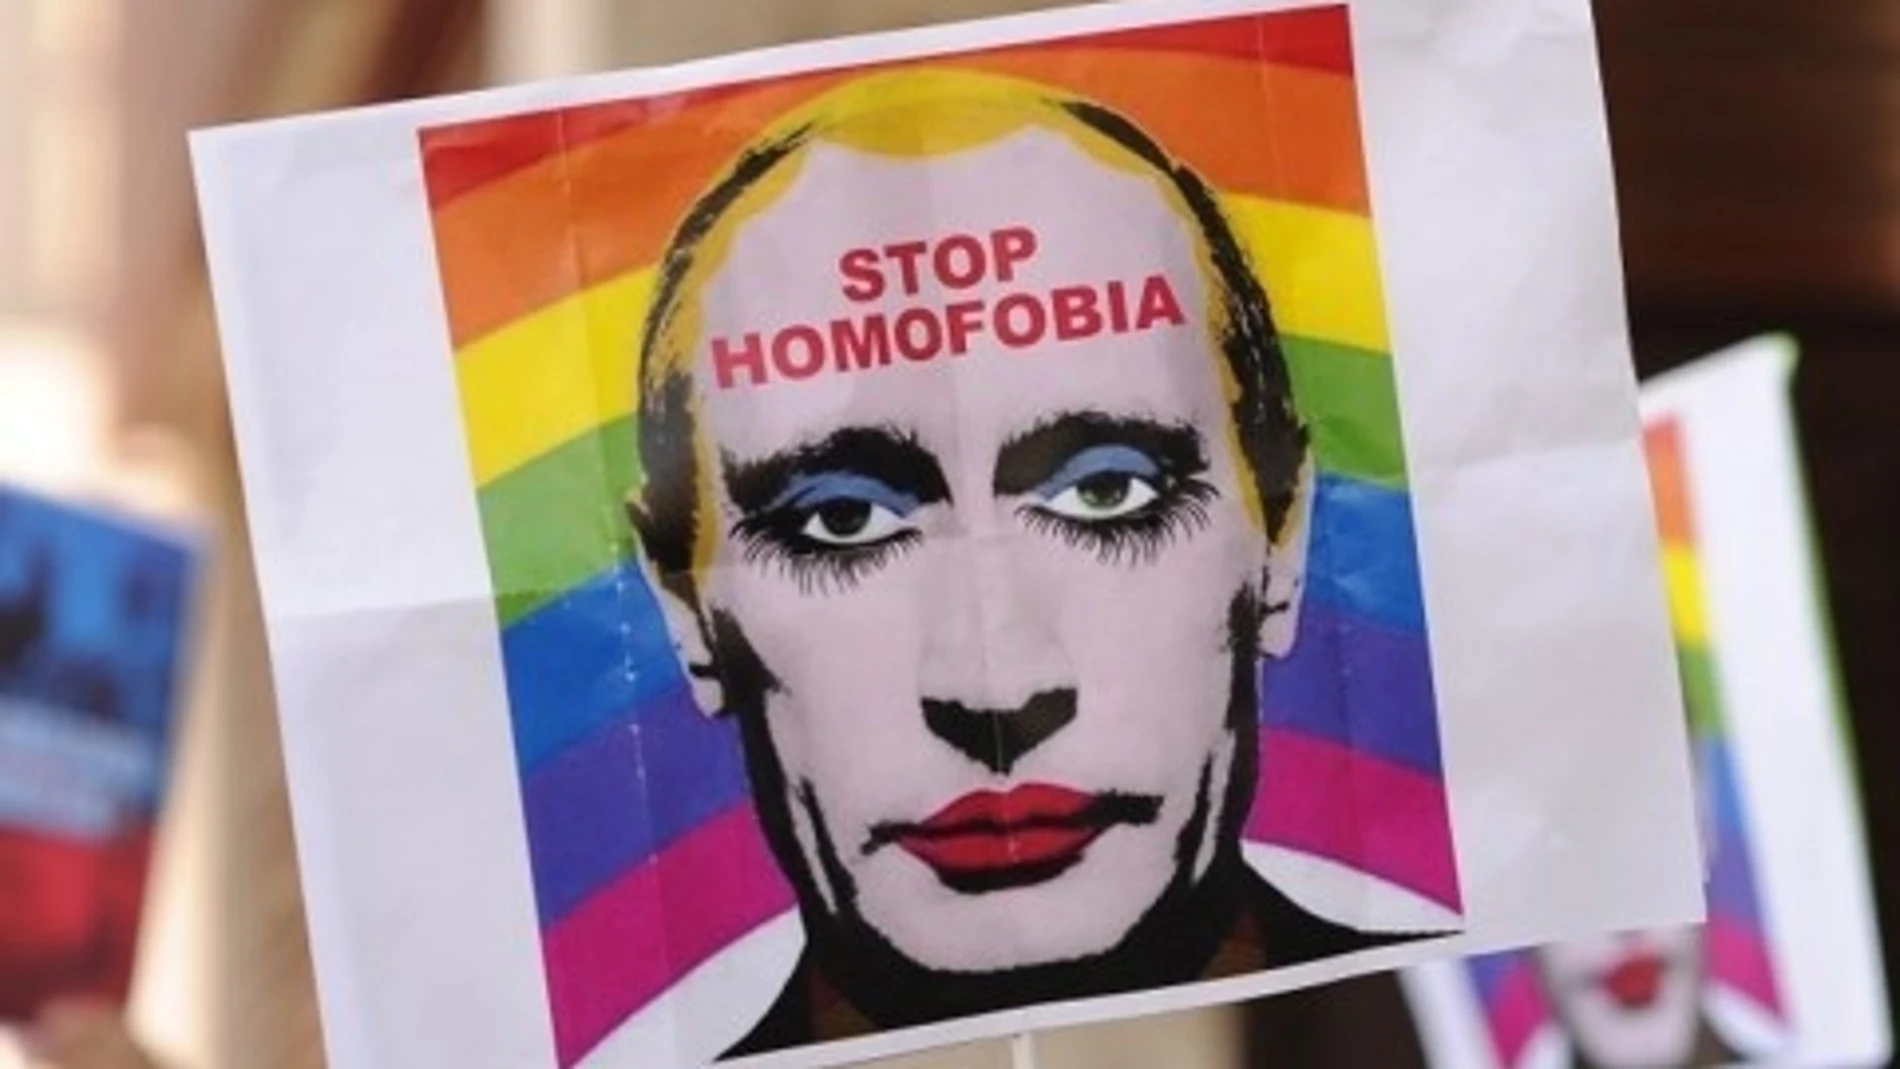 Esta imagen de Vladimir Putin fue prohibida en Rusia porque sugiere una "orientación sexual no estándar"